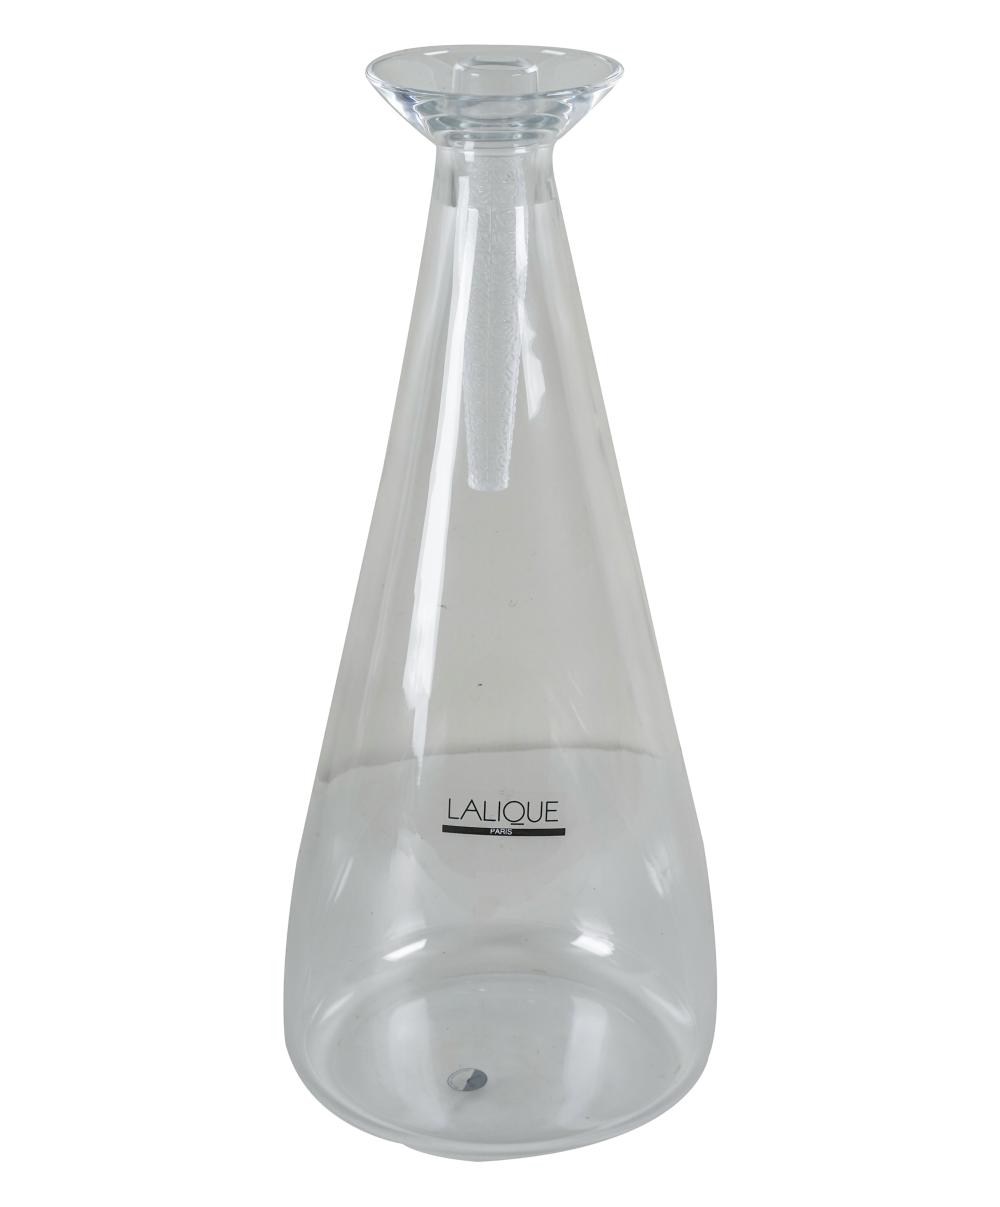 LALIQUE GLASS DECANTERsigned Lalique